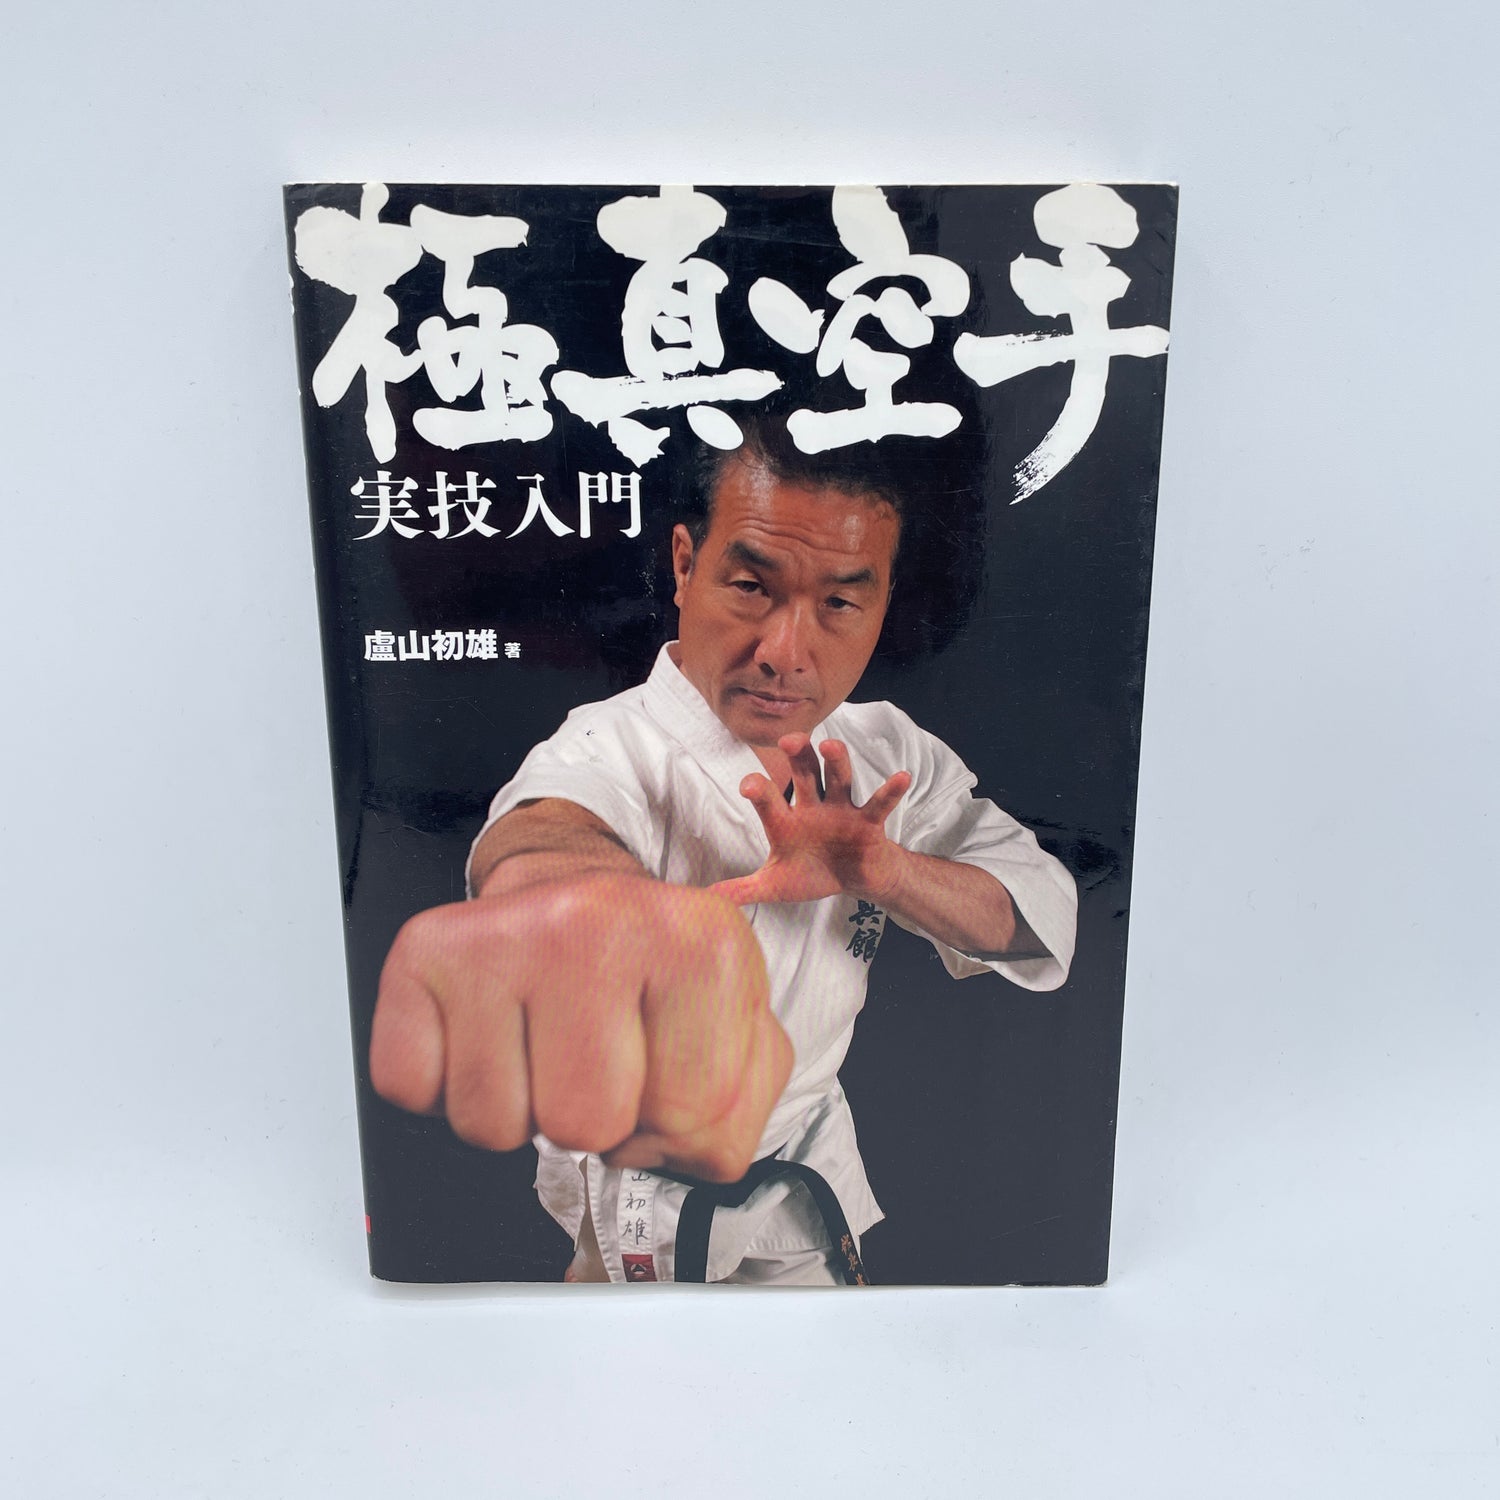 Introducción al libro Kyokushin Karate Striking de Hatsuo Royama (usado)